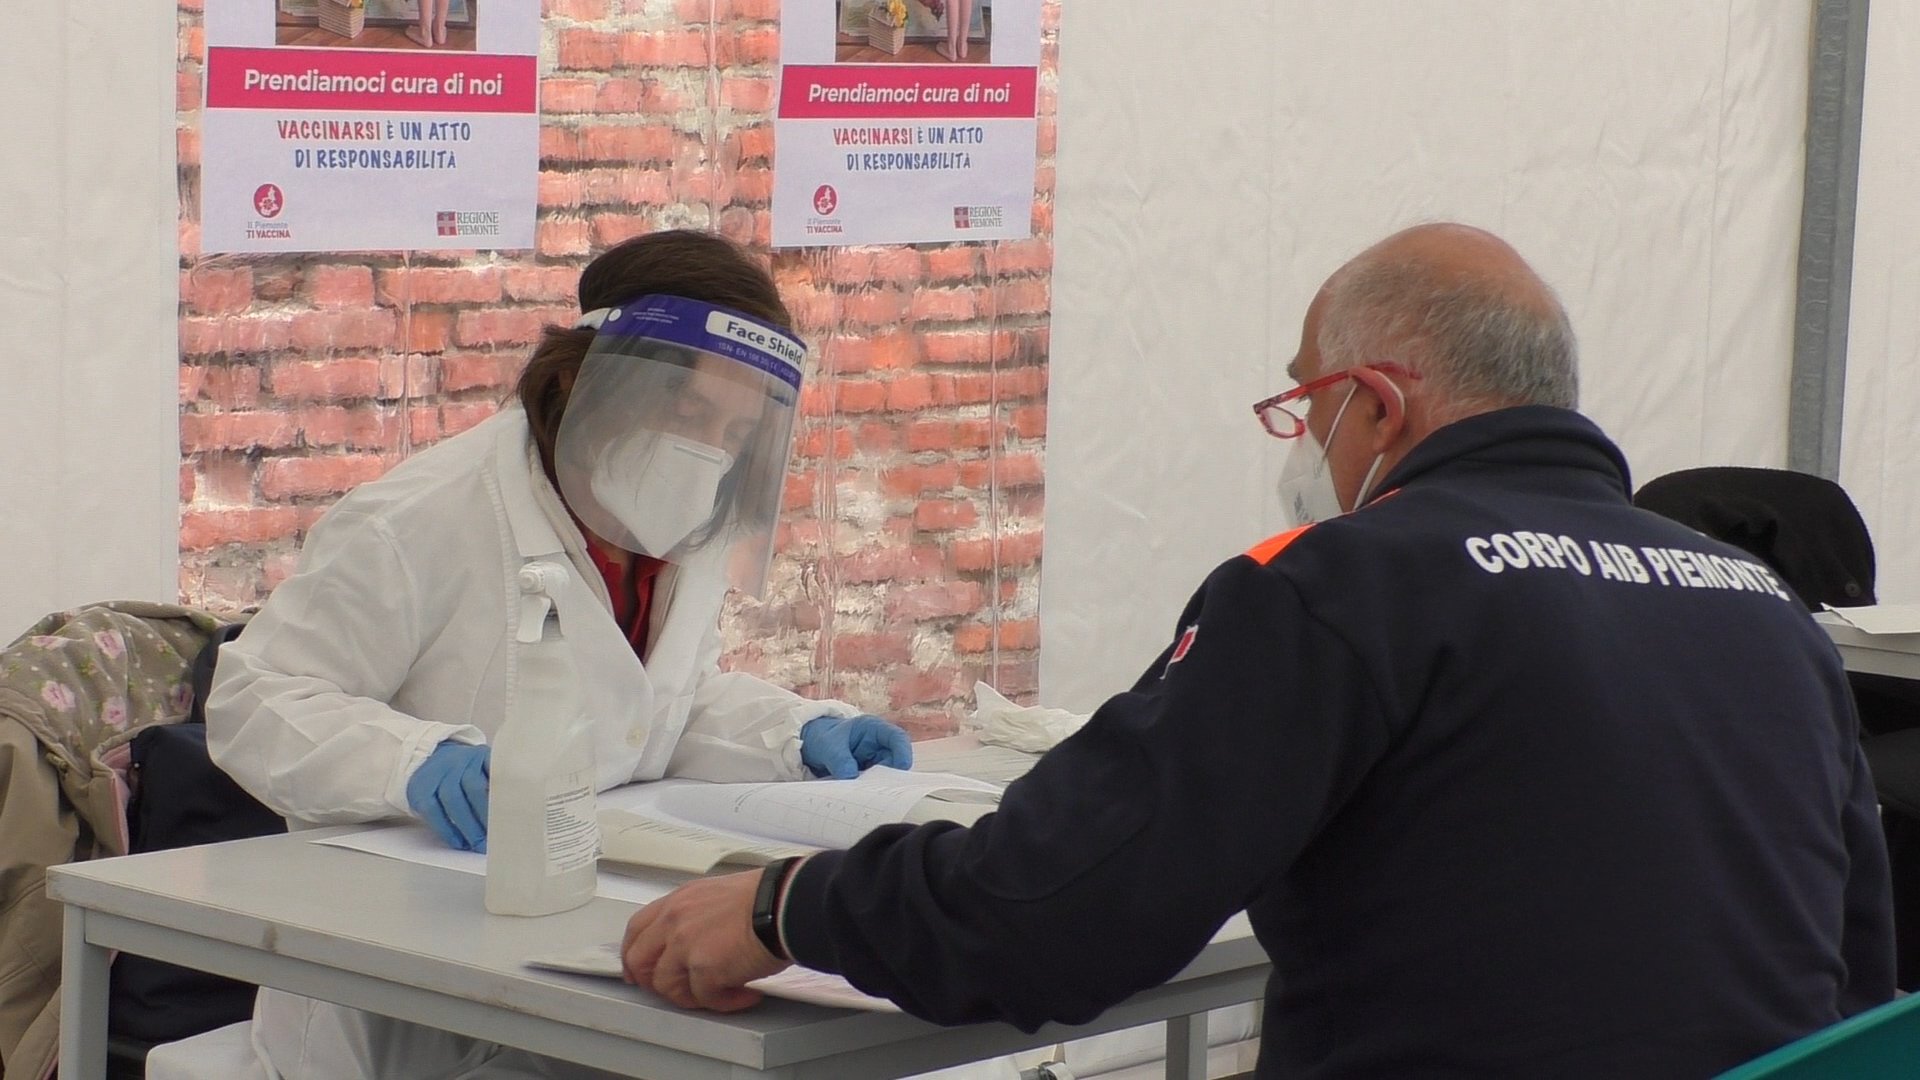 In Piemonte oltre 900 volontari pronti a vaccinare: 80 le strutture private disponibili